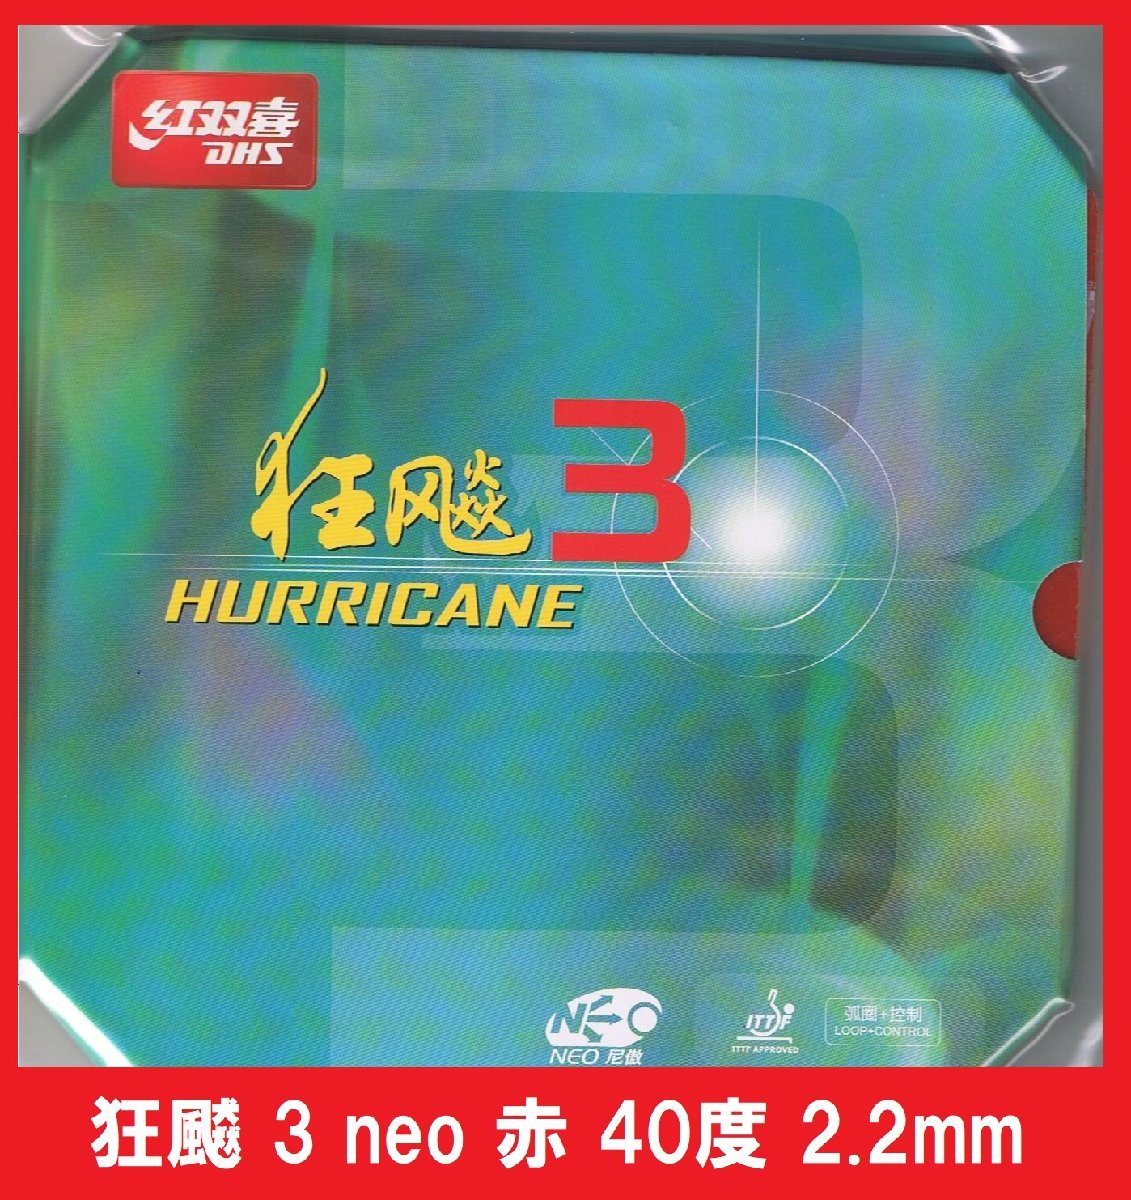 新品 キョウヒョウ3neo 赤 40度 2.2mm 紅双喜 DHS きょうひょう3NEO 新品 中国ラバー_画像1